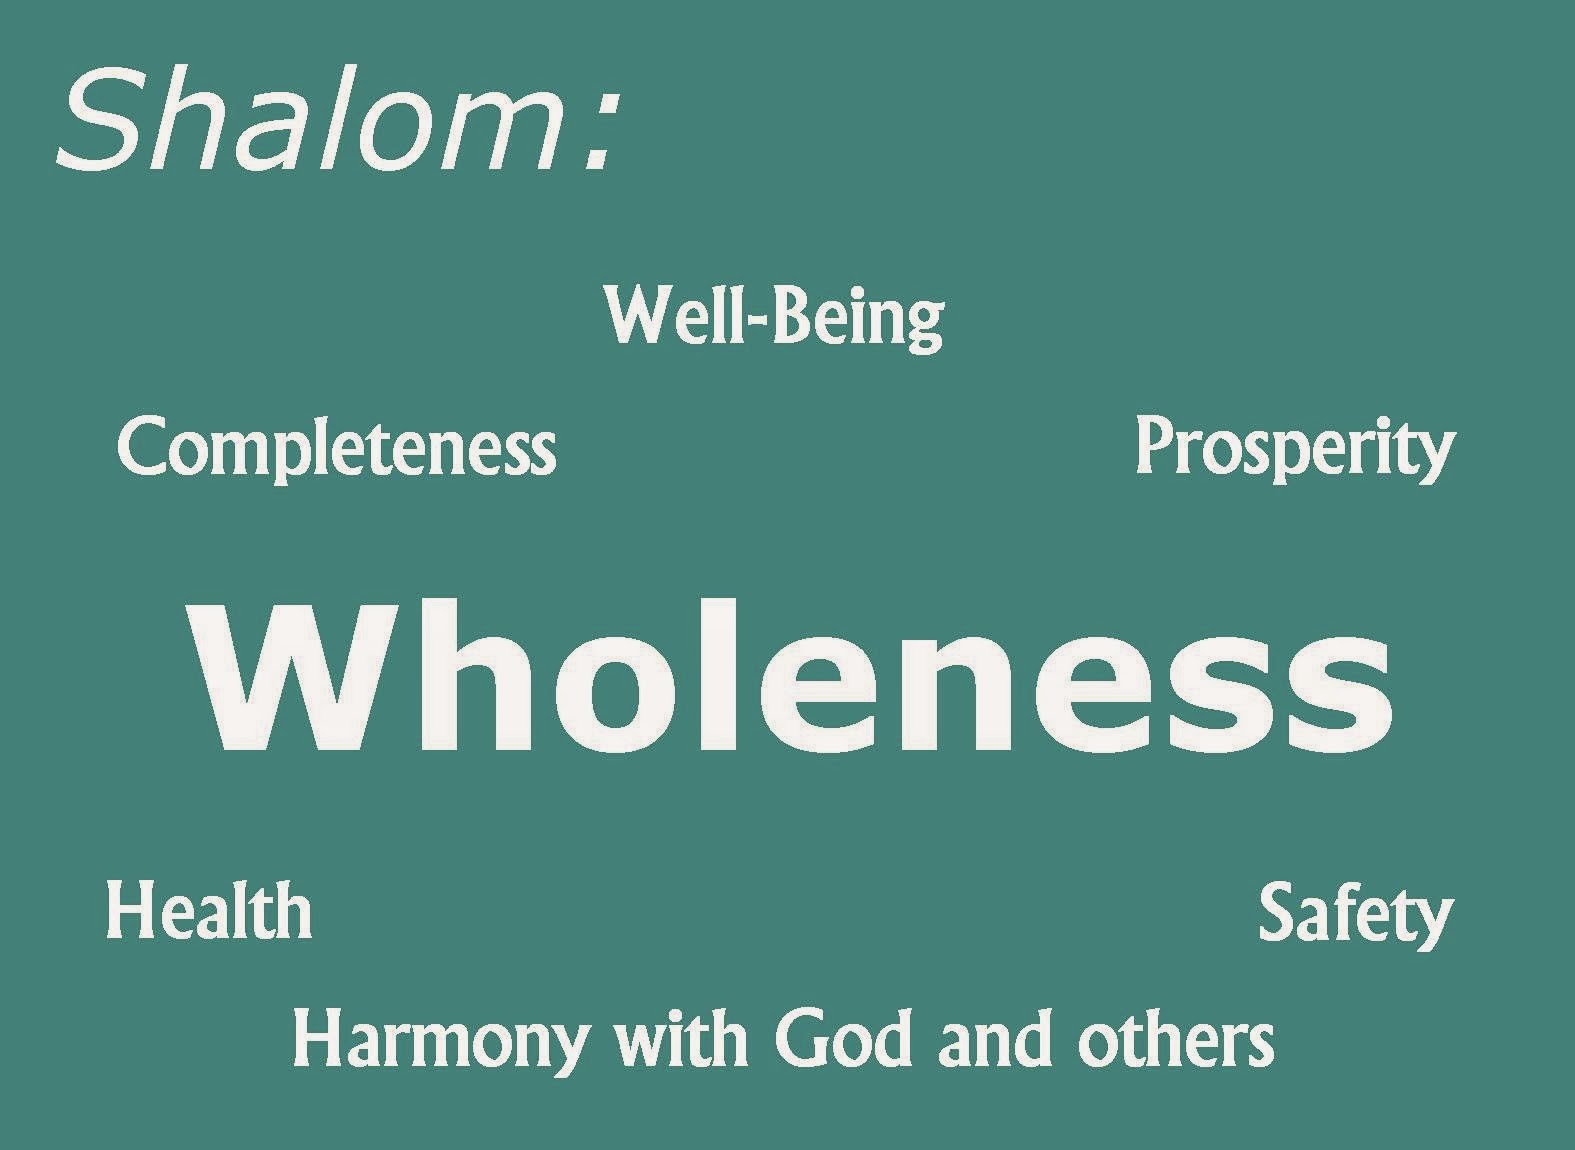 Shalom - Hebrew Word For Peace - Worship Christianity Faith